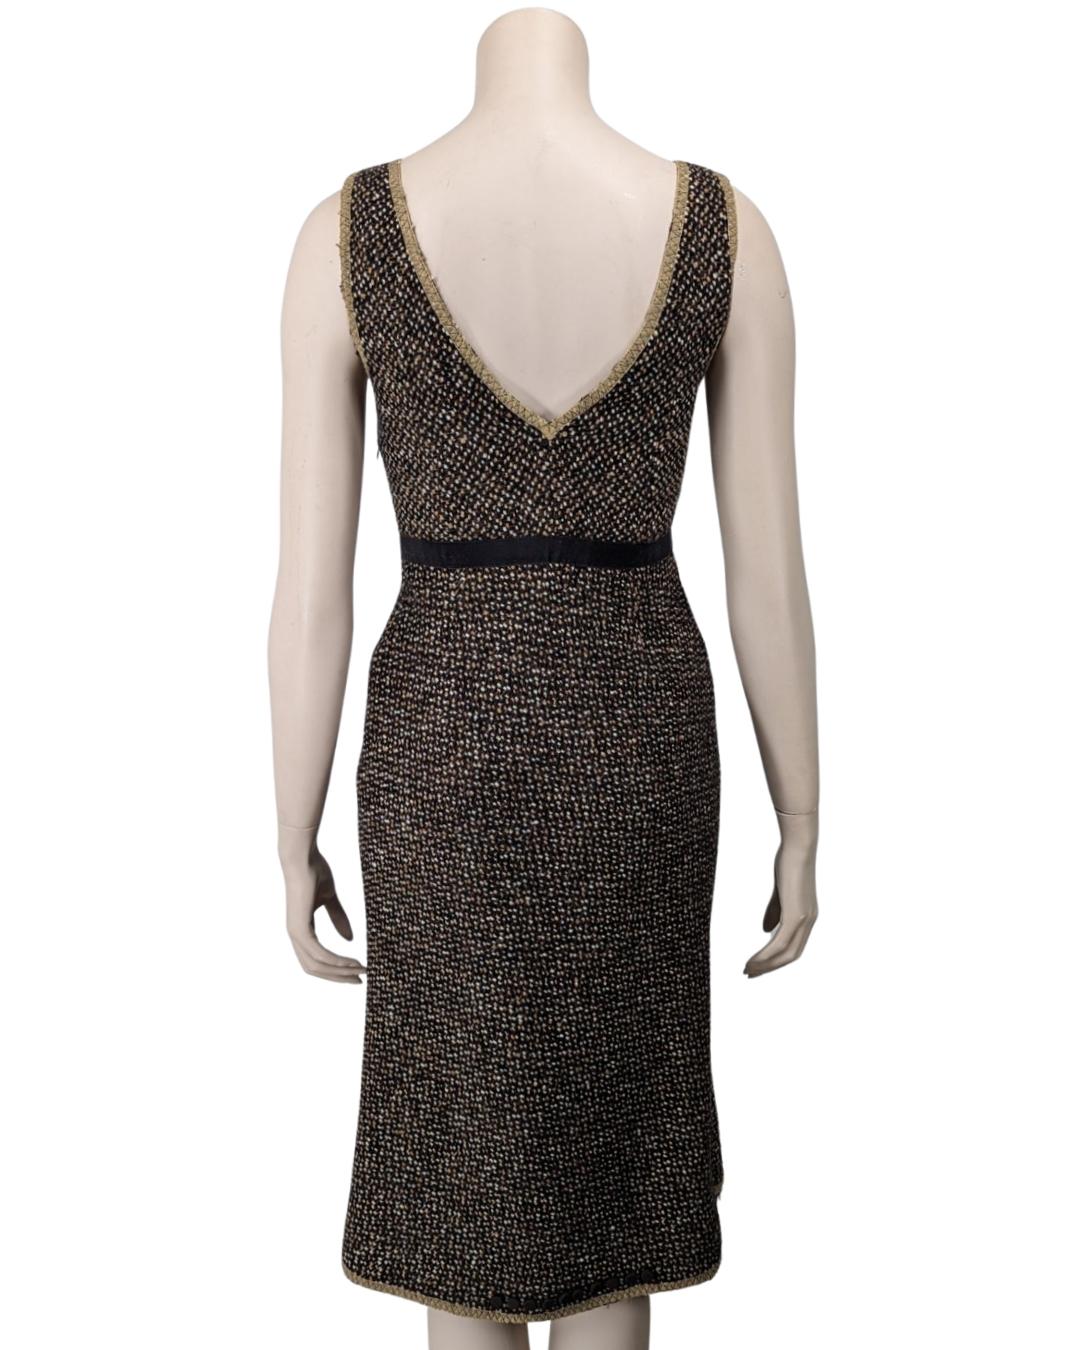 Prada Fall 2000 Runway Tweed Dress by Miuccia Prada For Sale 2